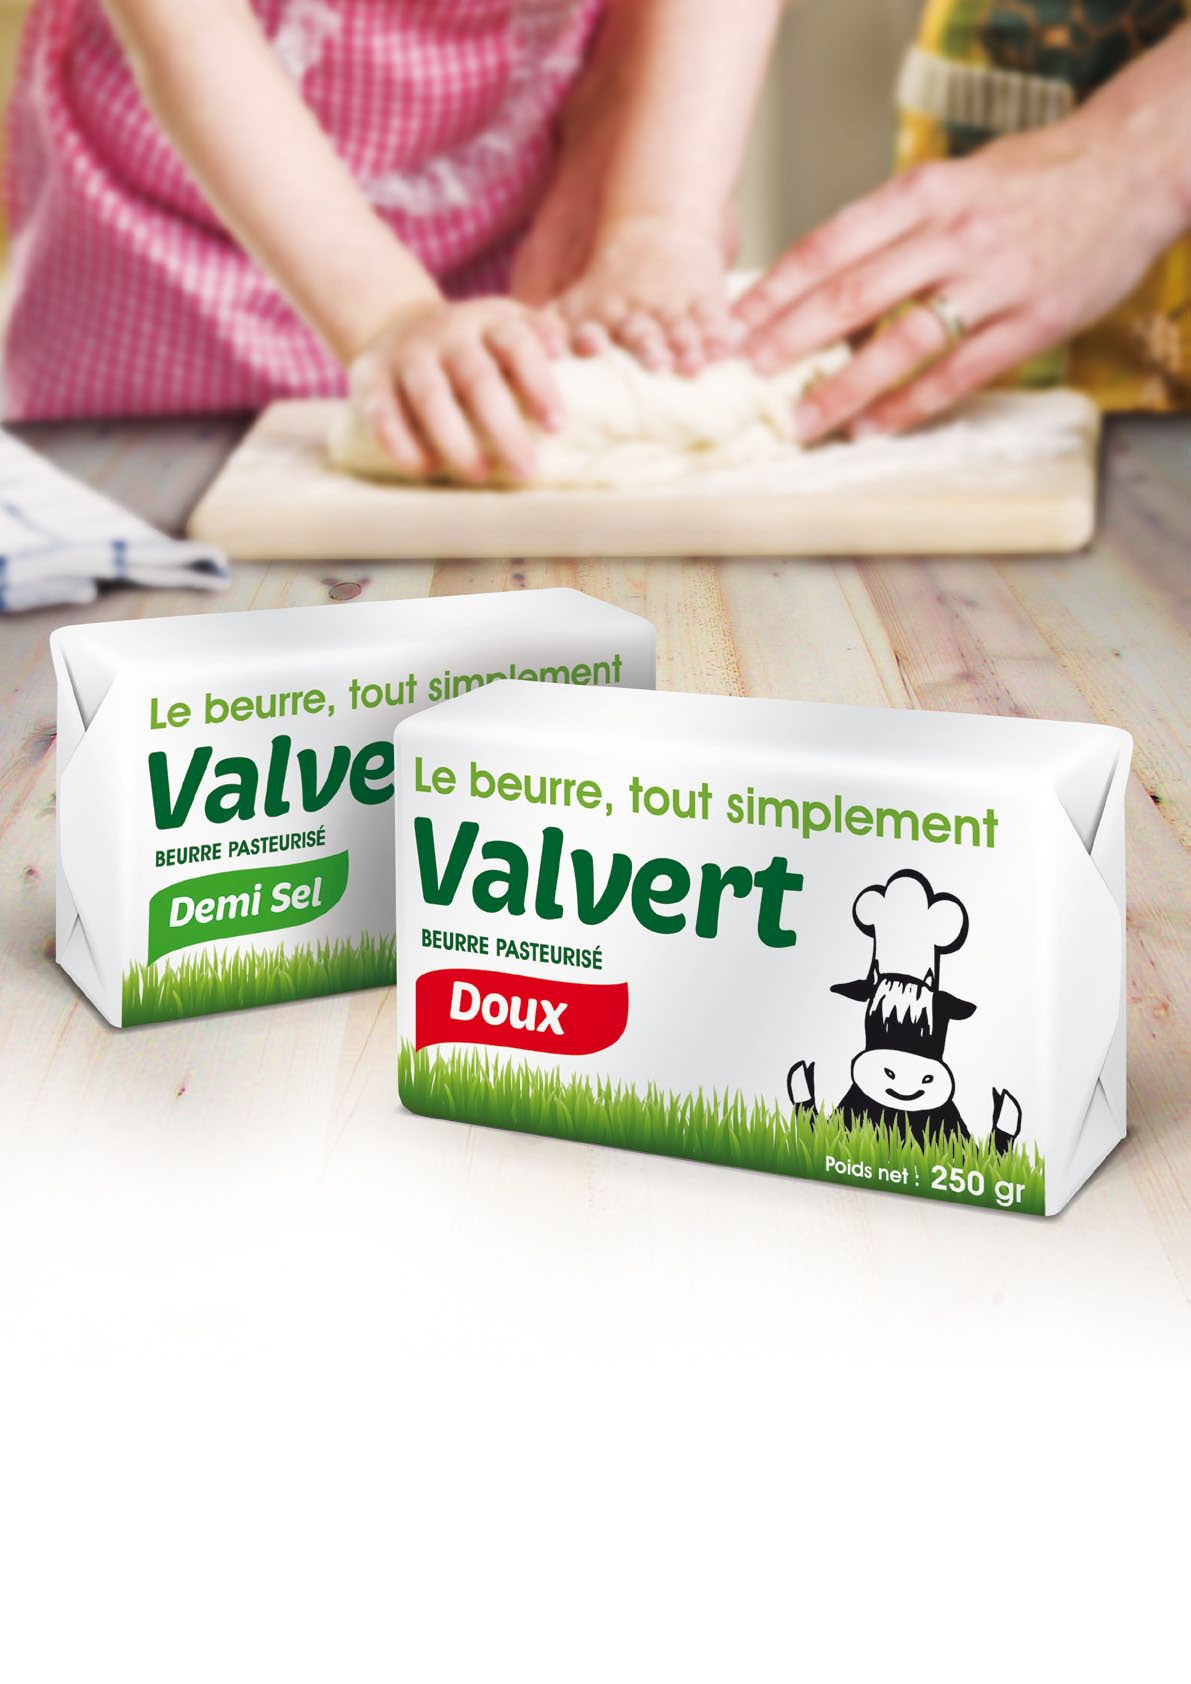 client : BEURALIA produits : Valvert, un beurre pasteurisé détail : création d un emballage pour un beurre demi-sel et doux de 250 gr 7 - concept «Le beurre, tout